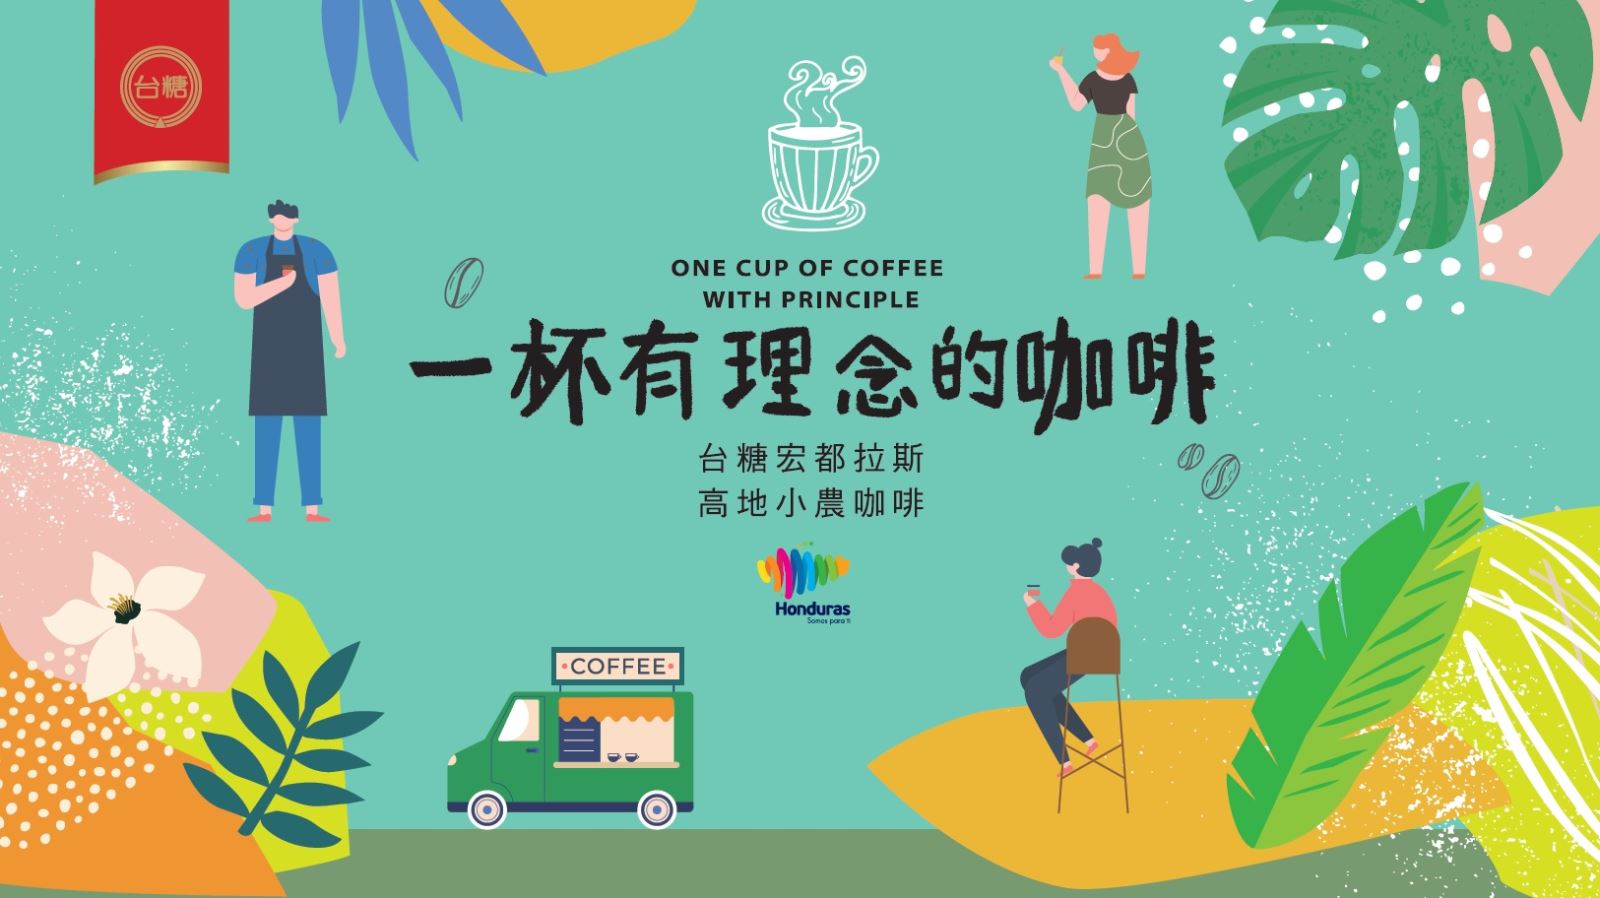 2019 年台糖「胖卡再出發，飄香全臺灣」， 帶著香醇精品咖啡走訪全臺的巷弄老街，很 多人因此認識「宏都拉斯高地小農咖啡」的美 好